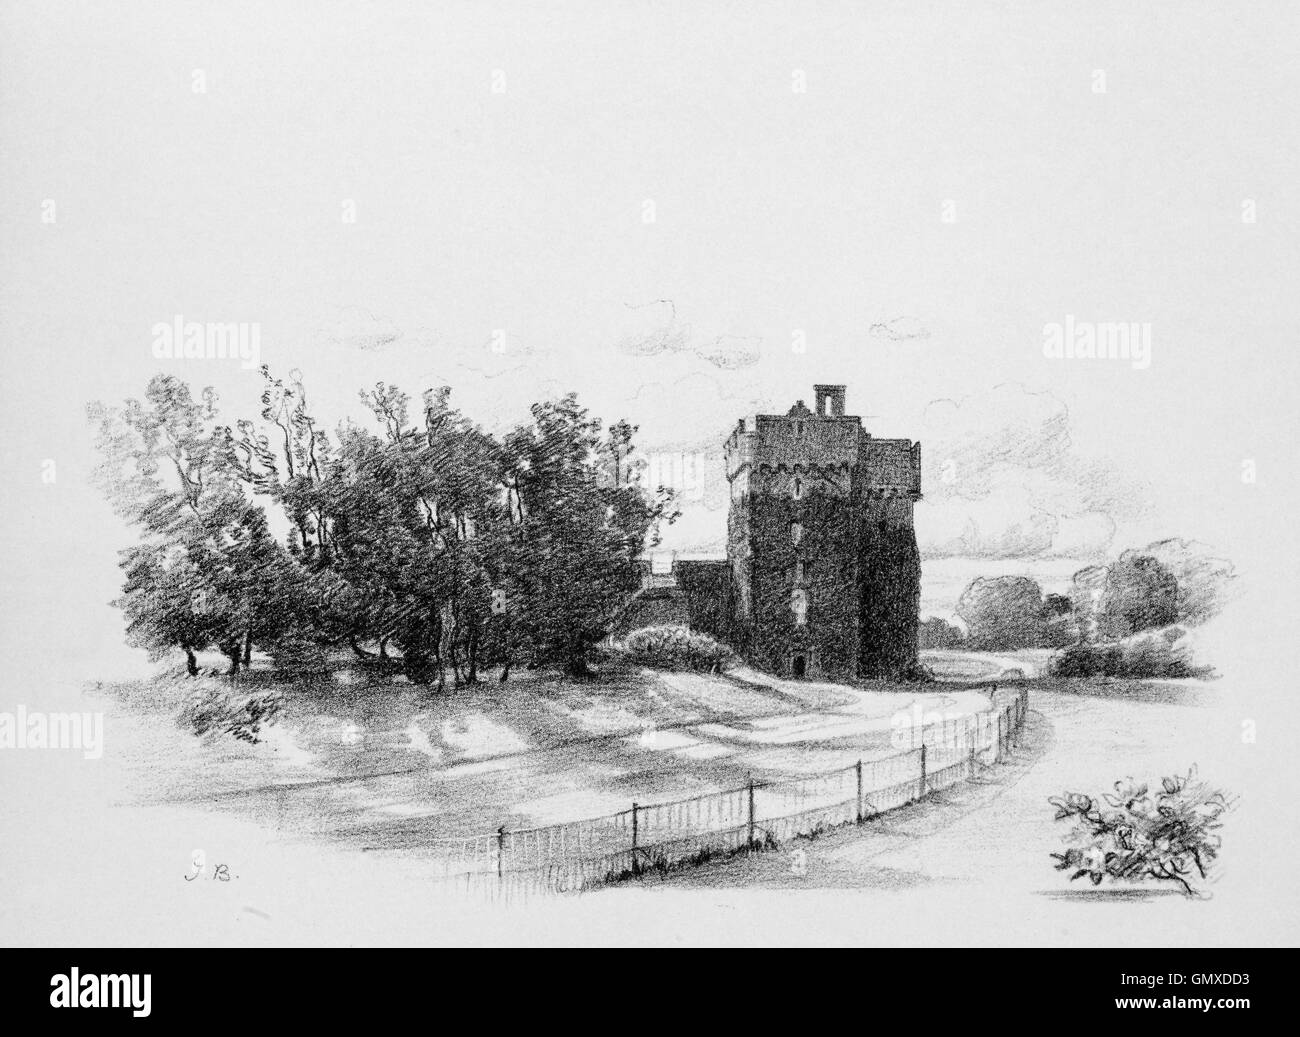 Whittingehame, tour ou château, est une maison-tour du xve siècle environ 2,5 miles (4,0 km) au sud d'East Linton, sur la rive ouest de l'eau dans Whittinghame, East Lothian en Écosse. (À partir de la 'Sketchs en East Lothian' par Thomas B. Blacklock...1892) Banque D'Images